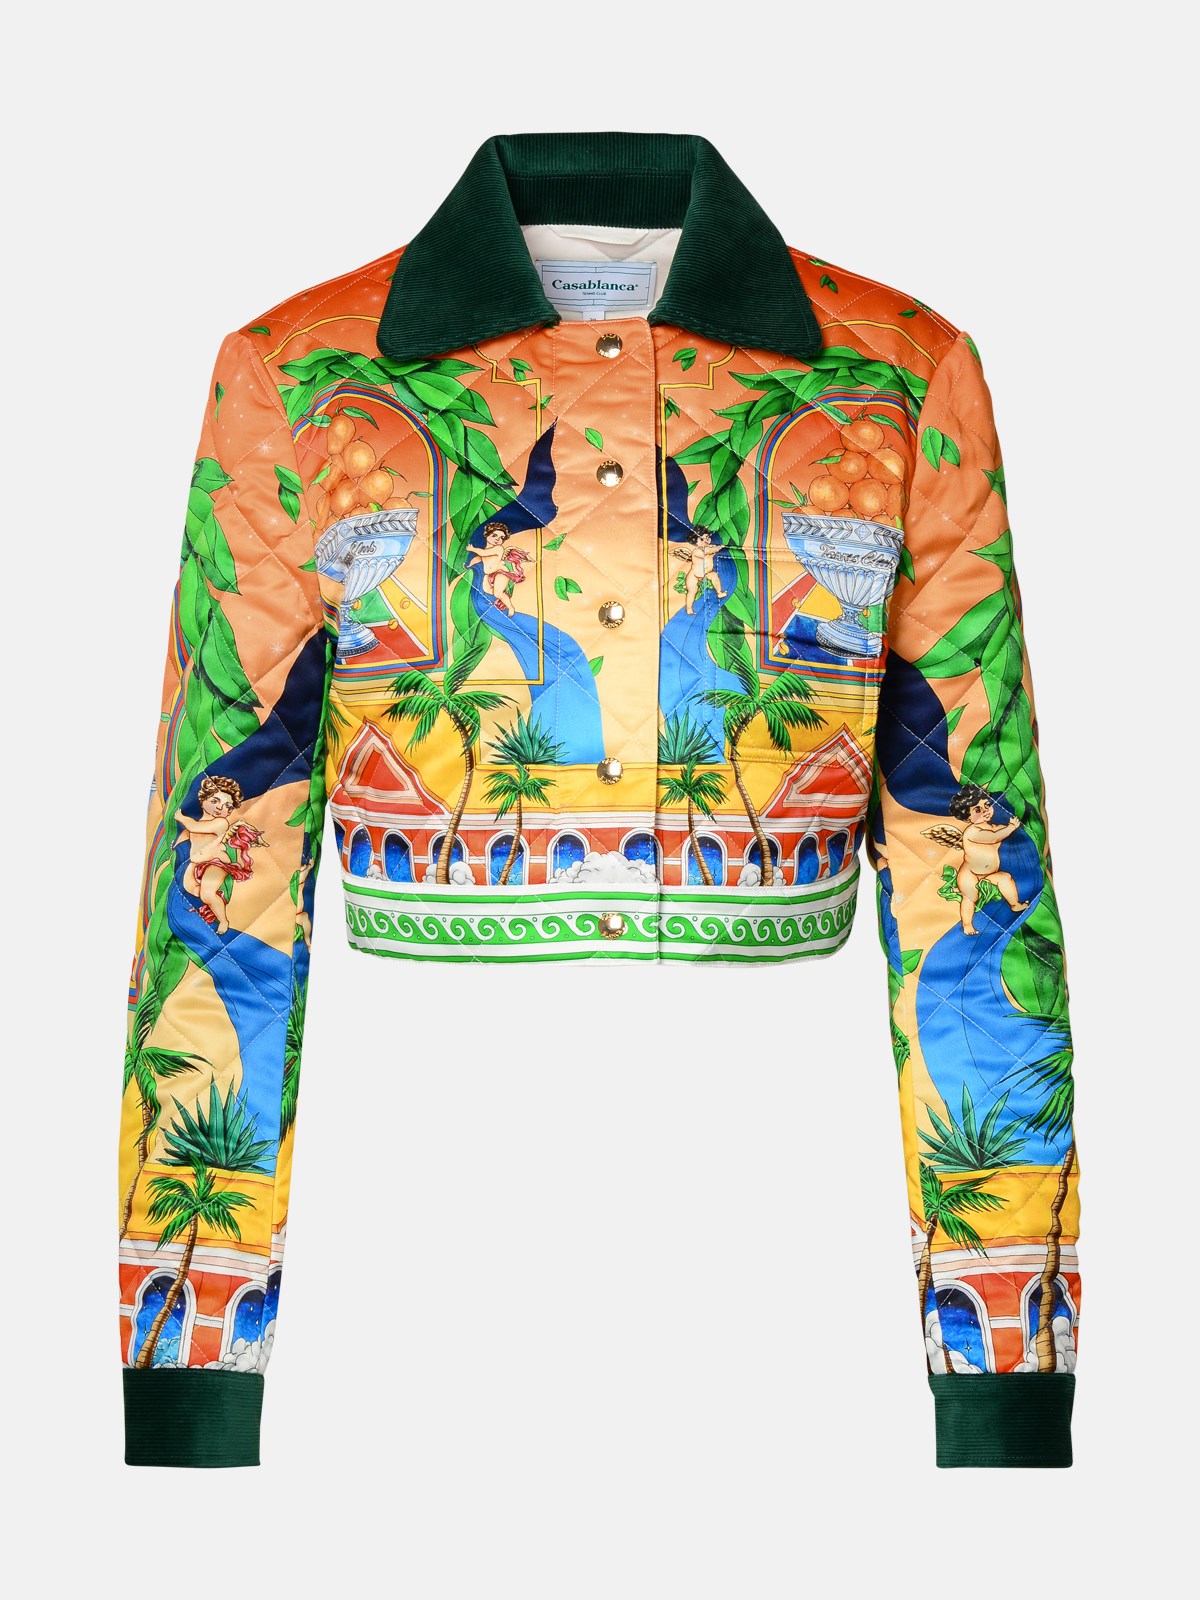 Casablanca Kids' Multicolor Polyester Jacket In Orange